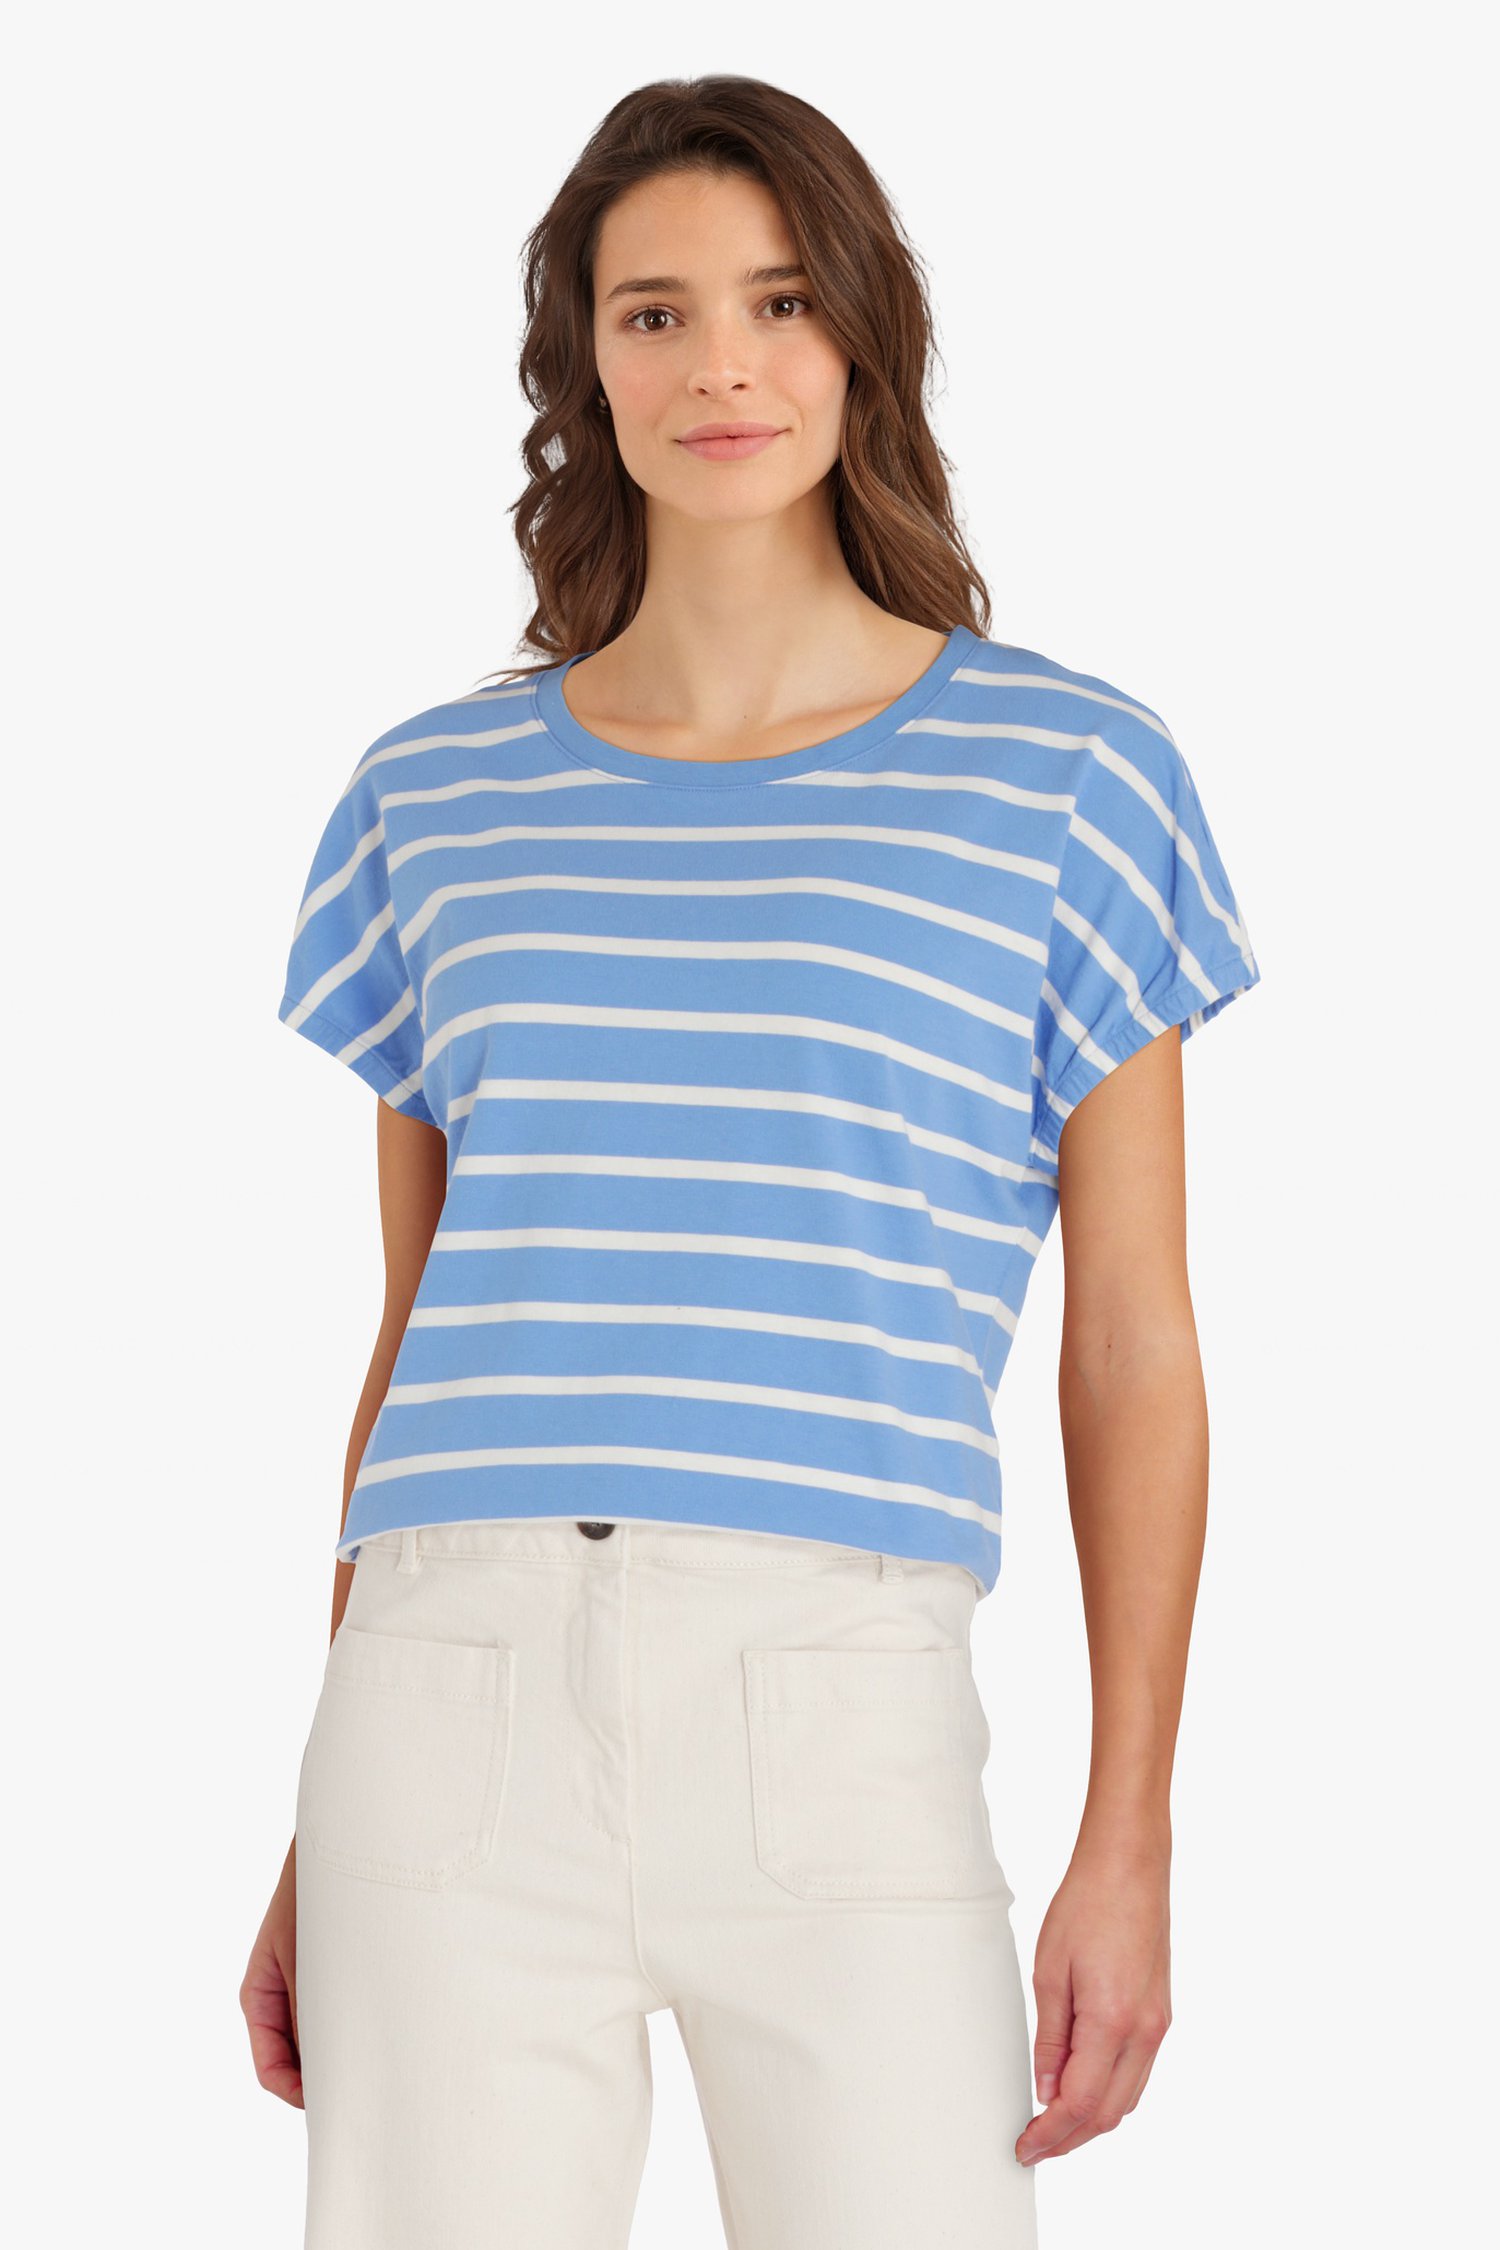 T-shirt en coton rayé bleu et blanc de Liberty Loving nature pour Femmes